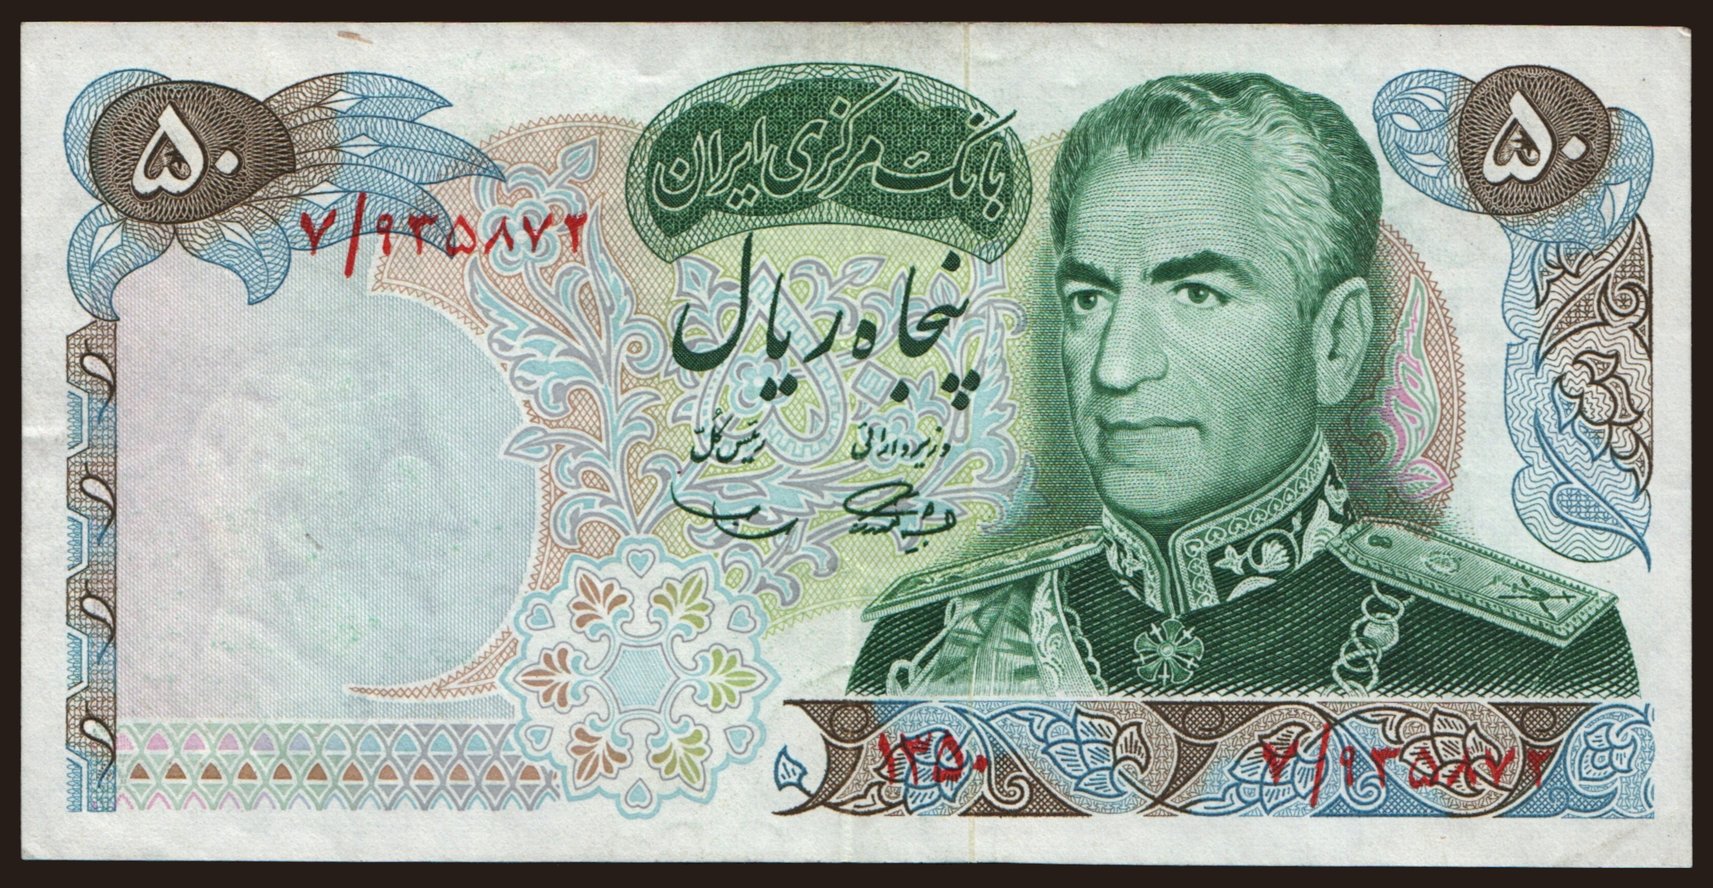 50 rials, 1971